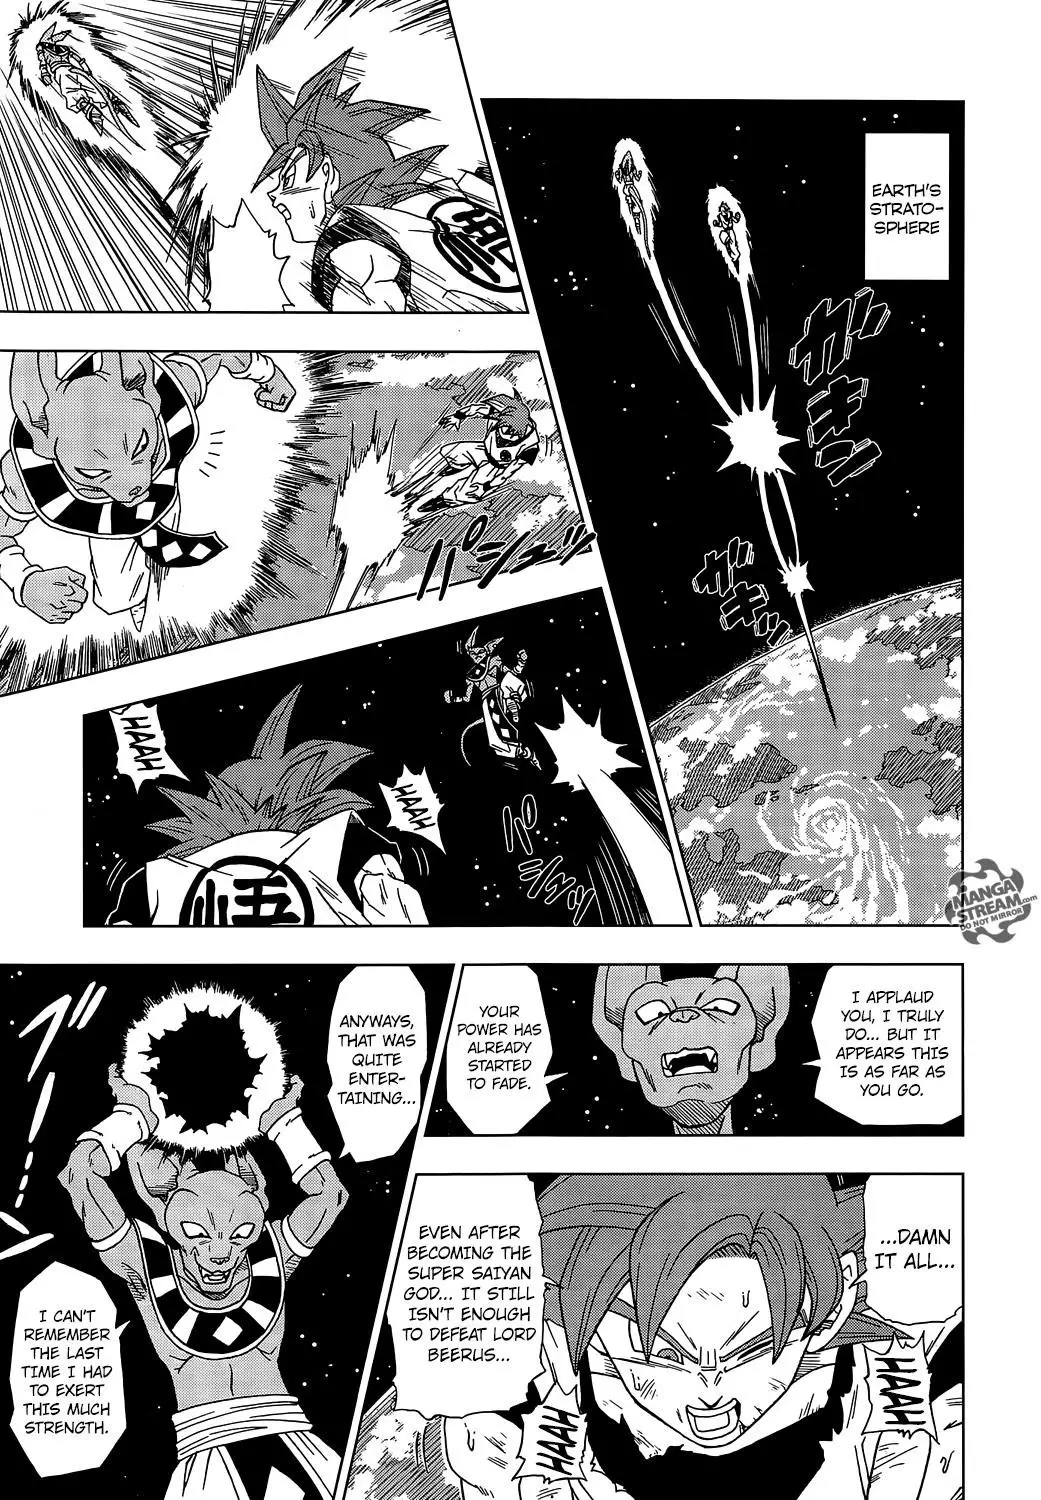 Dragon Ball Super - 4 page p_00012